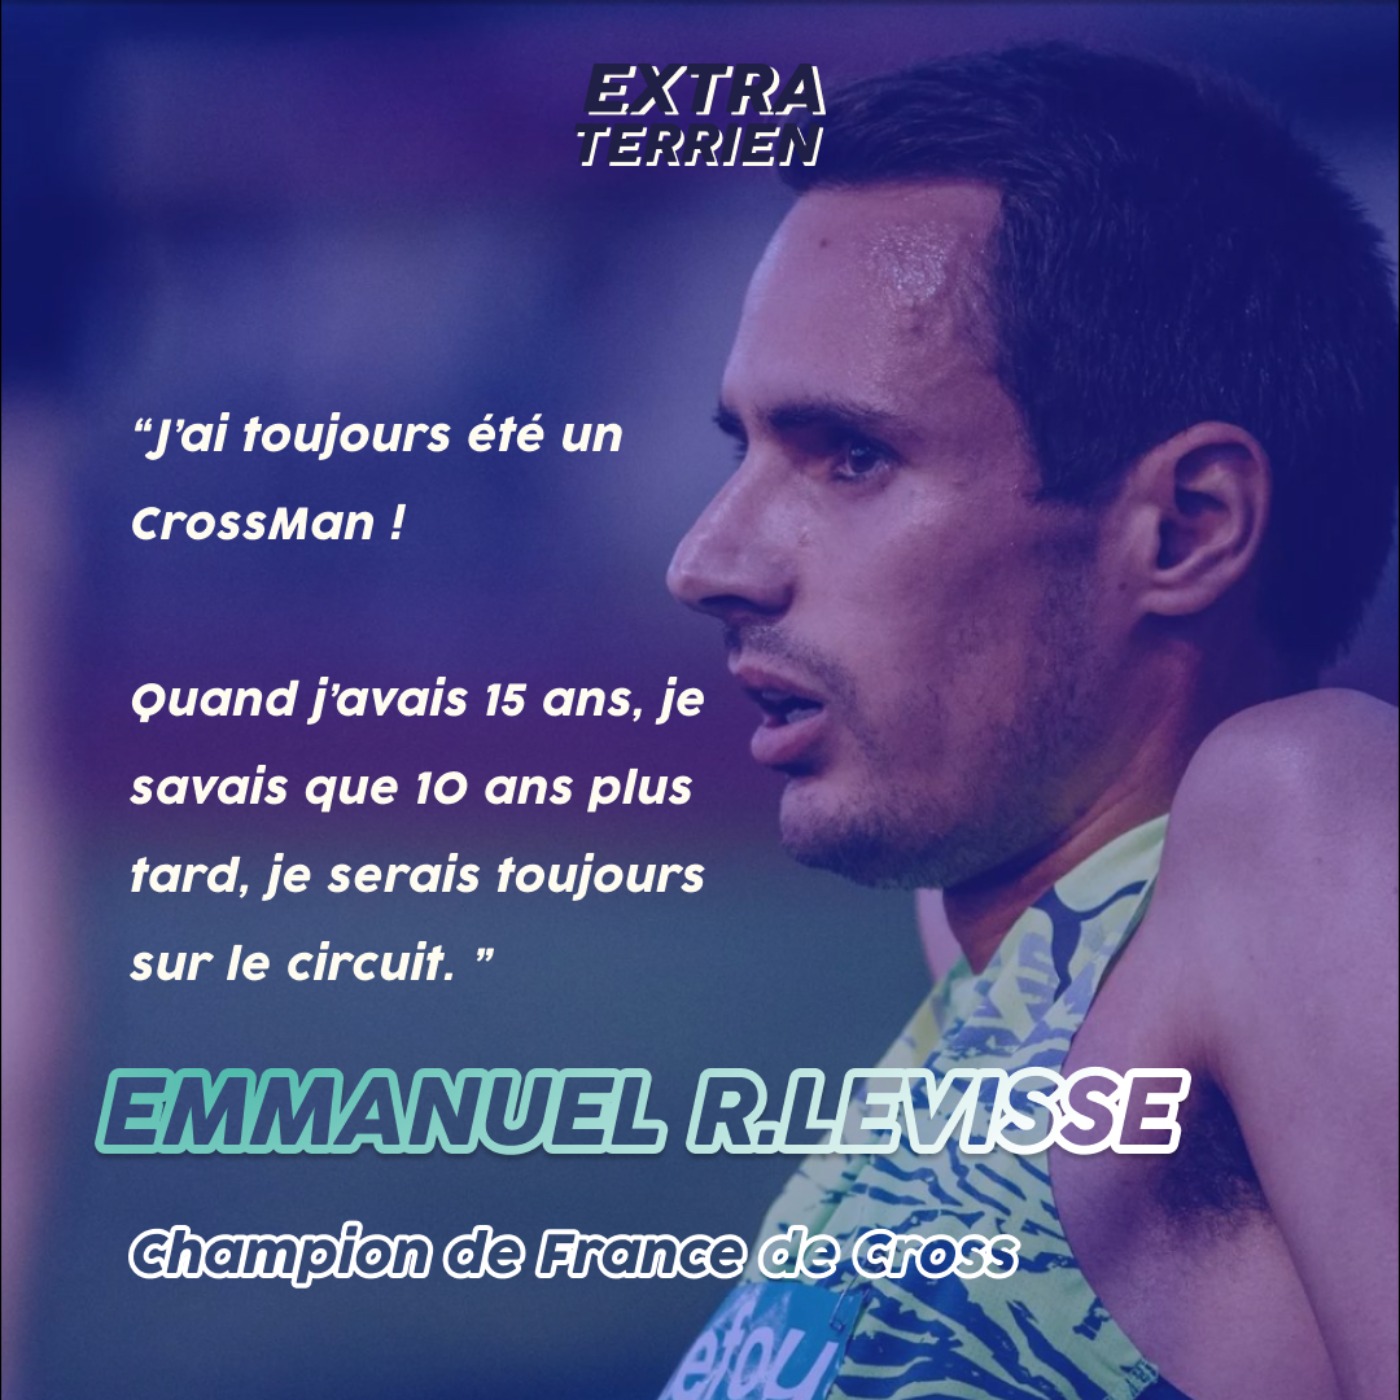 EXTRAIT - Emmanuel Roudolff-Levisse